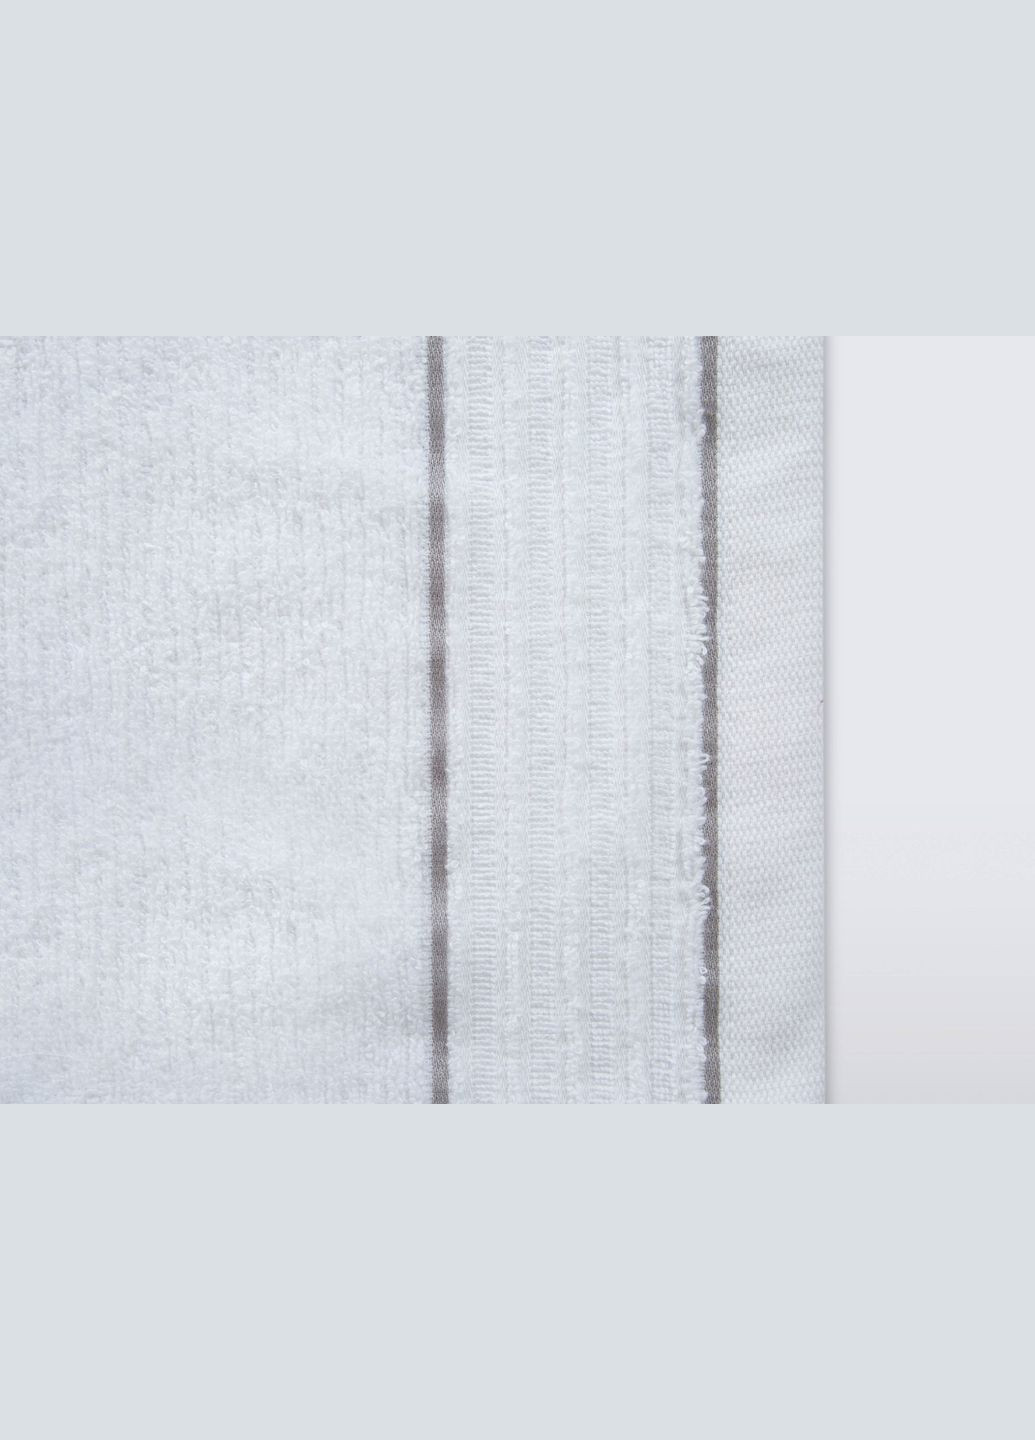 Irya полотенце - roya beyaz белый 70*140 белый производство -